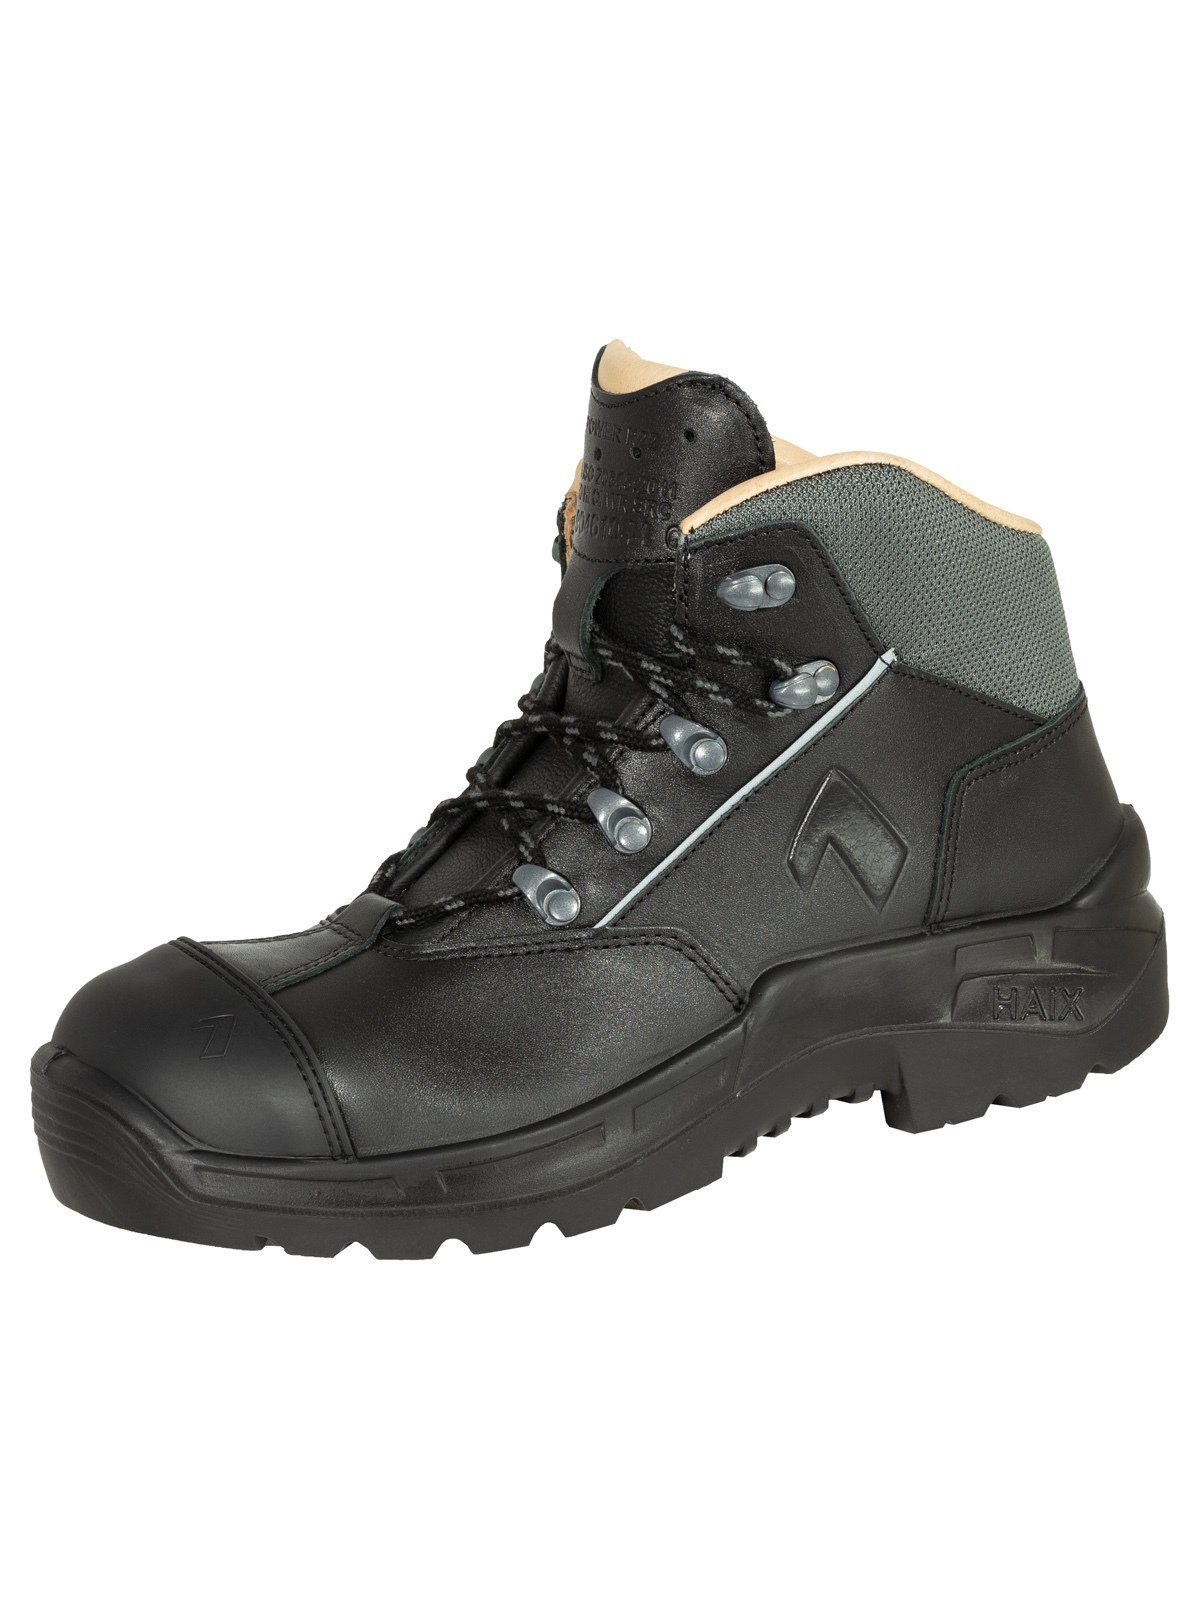 Arbeit Herren Sicherheitsklasse S3 Schuhe online kaufen | OTTO